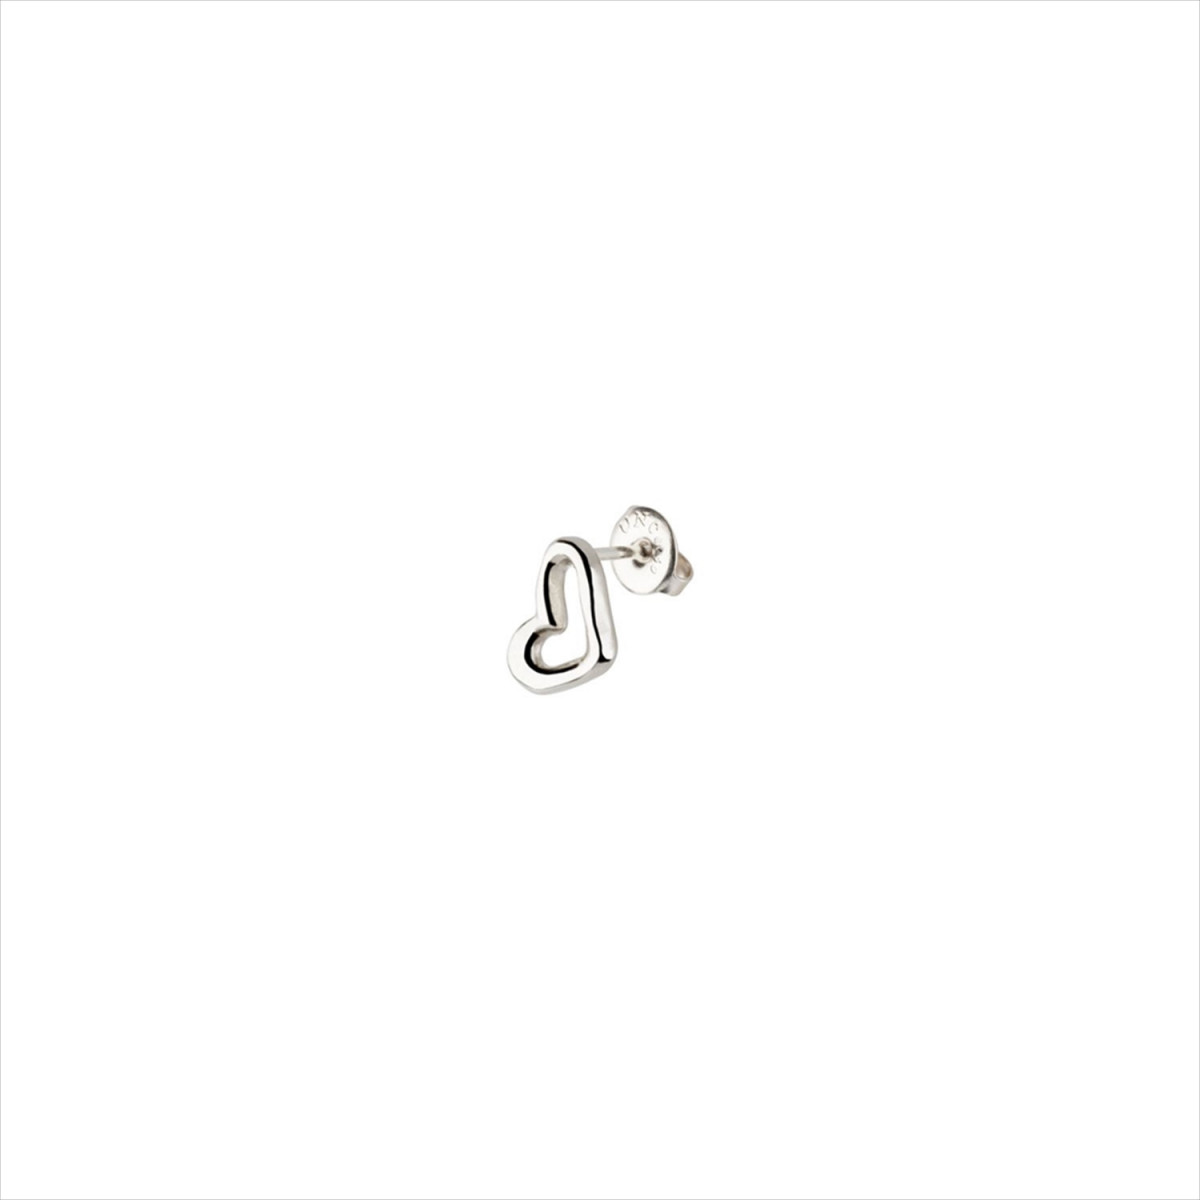 1 Pendiente H´art Stud, tipo piercing. Diseño corazón. Metal bañado en plata. Uno de 50